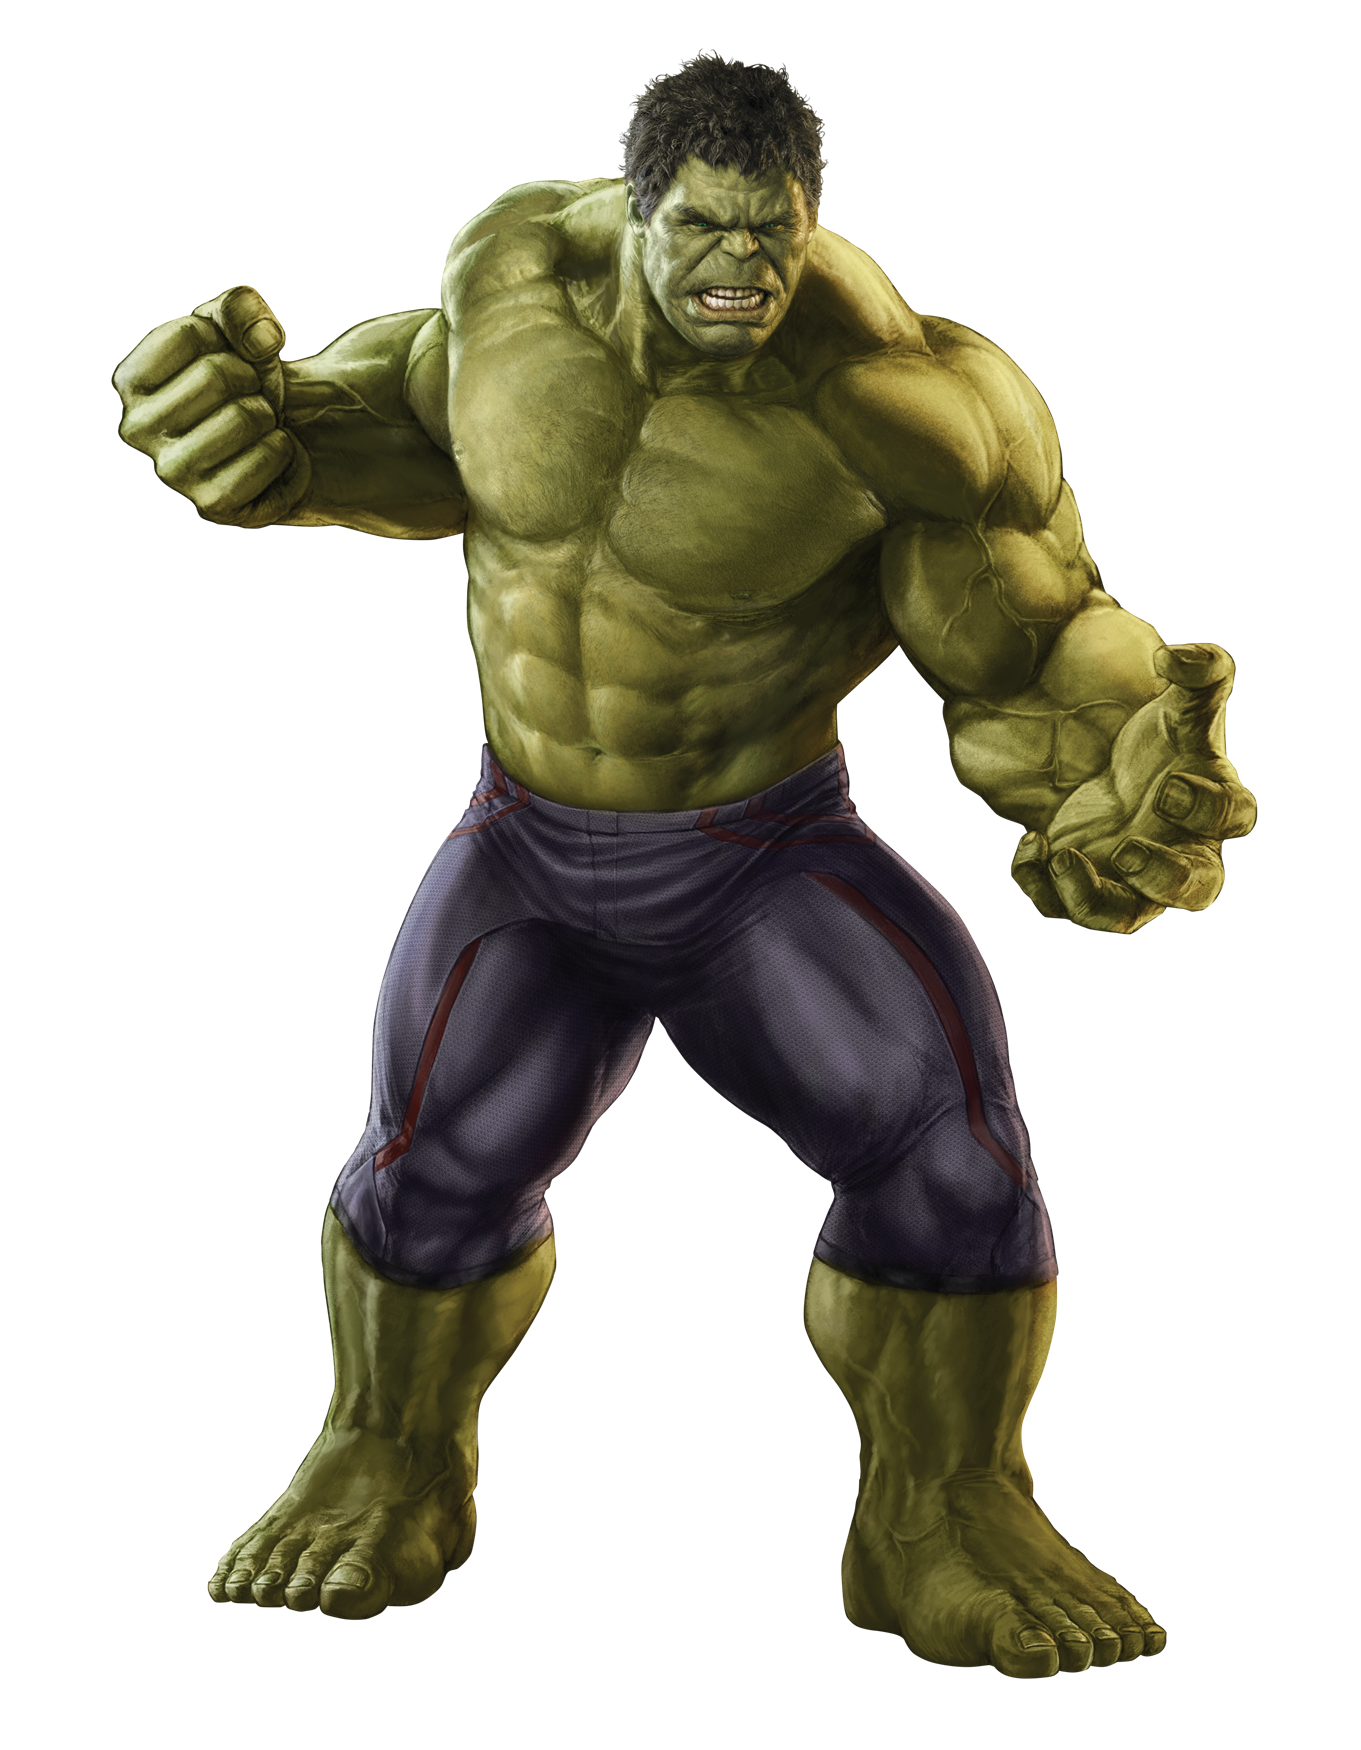 Immagine di PNG gratuita di Hulk